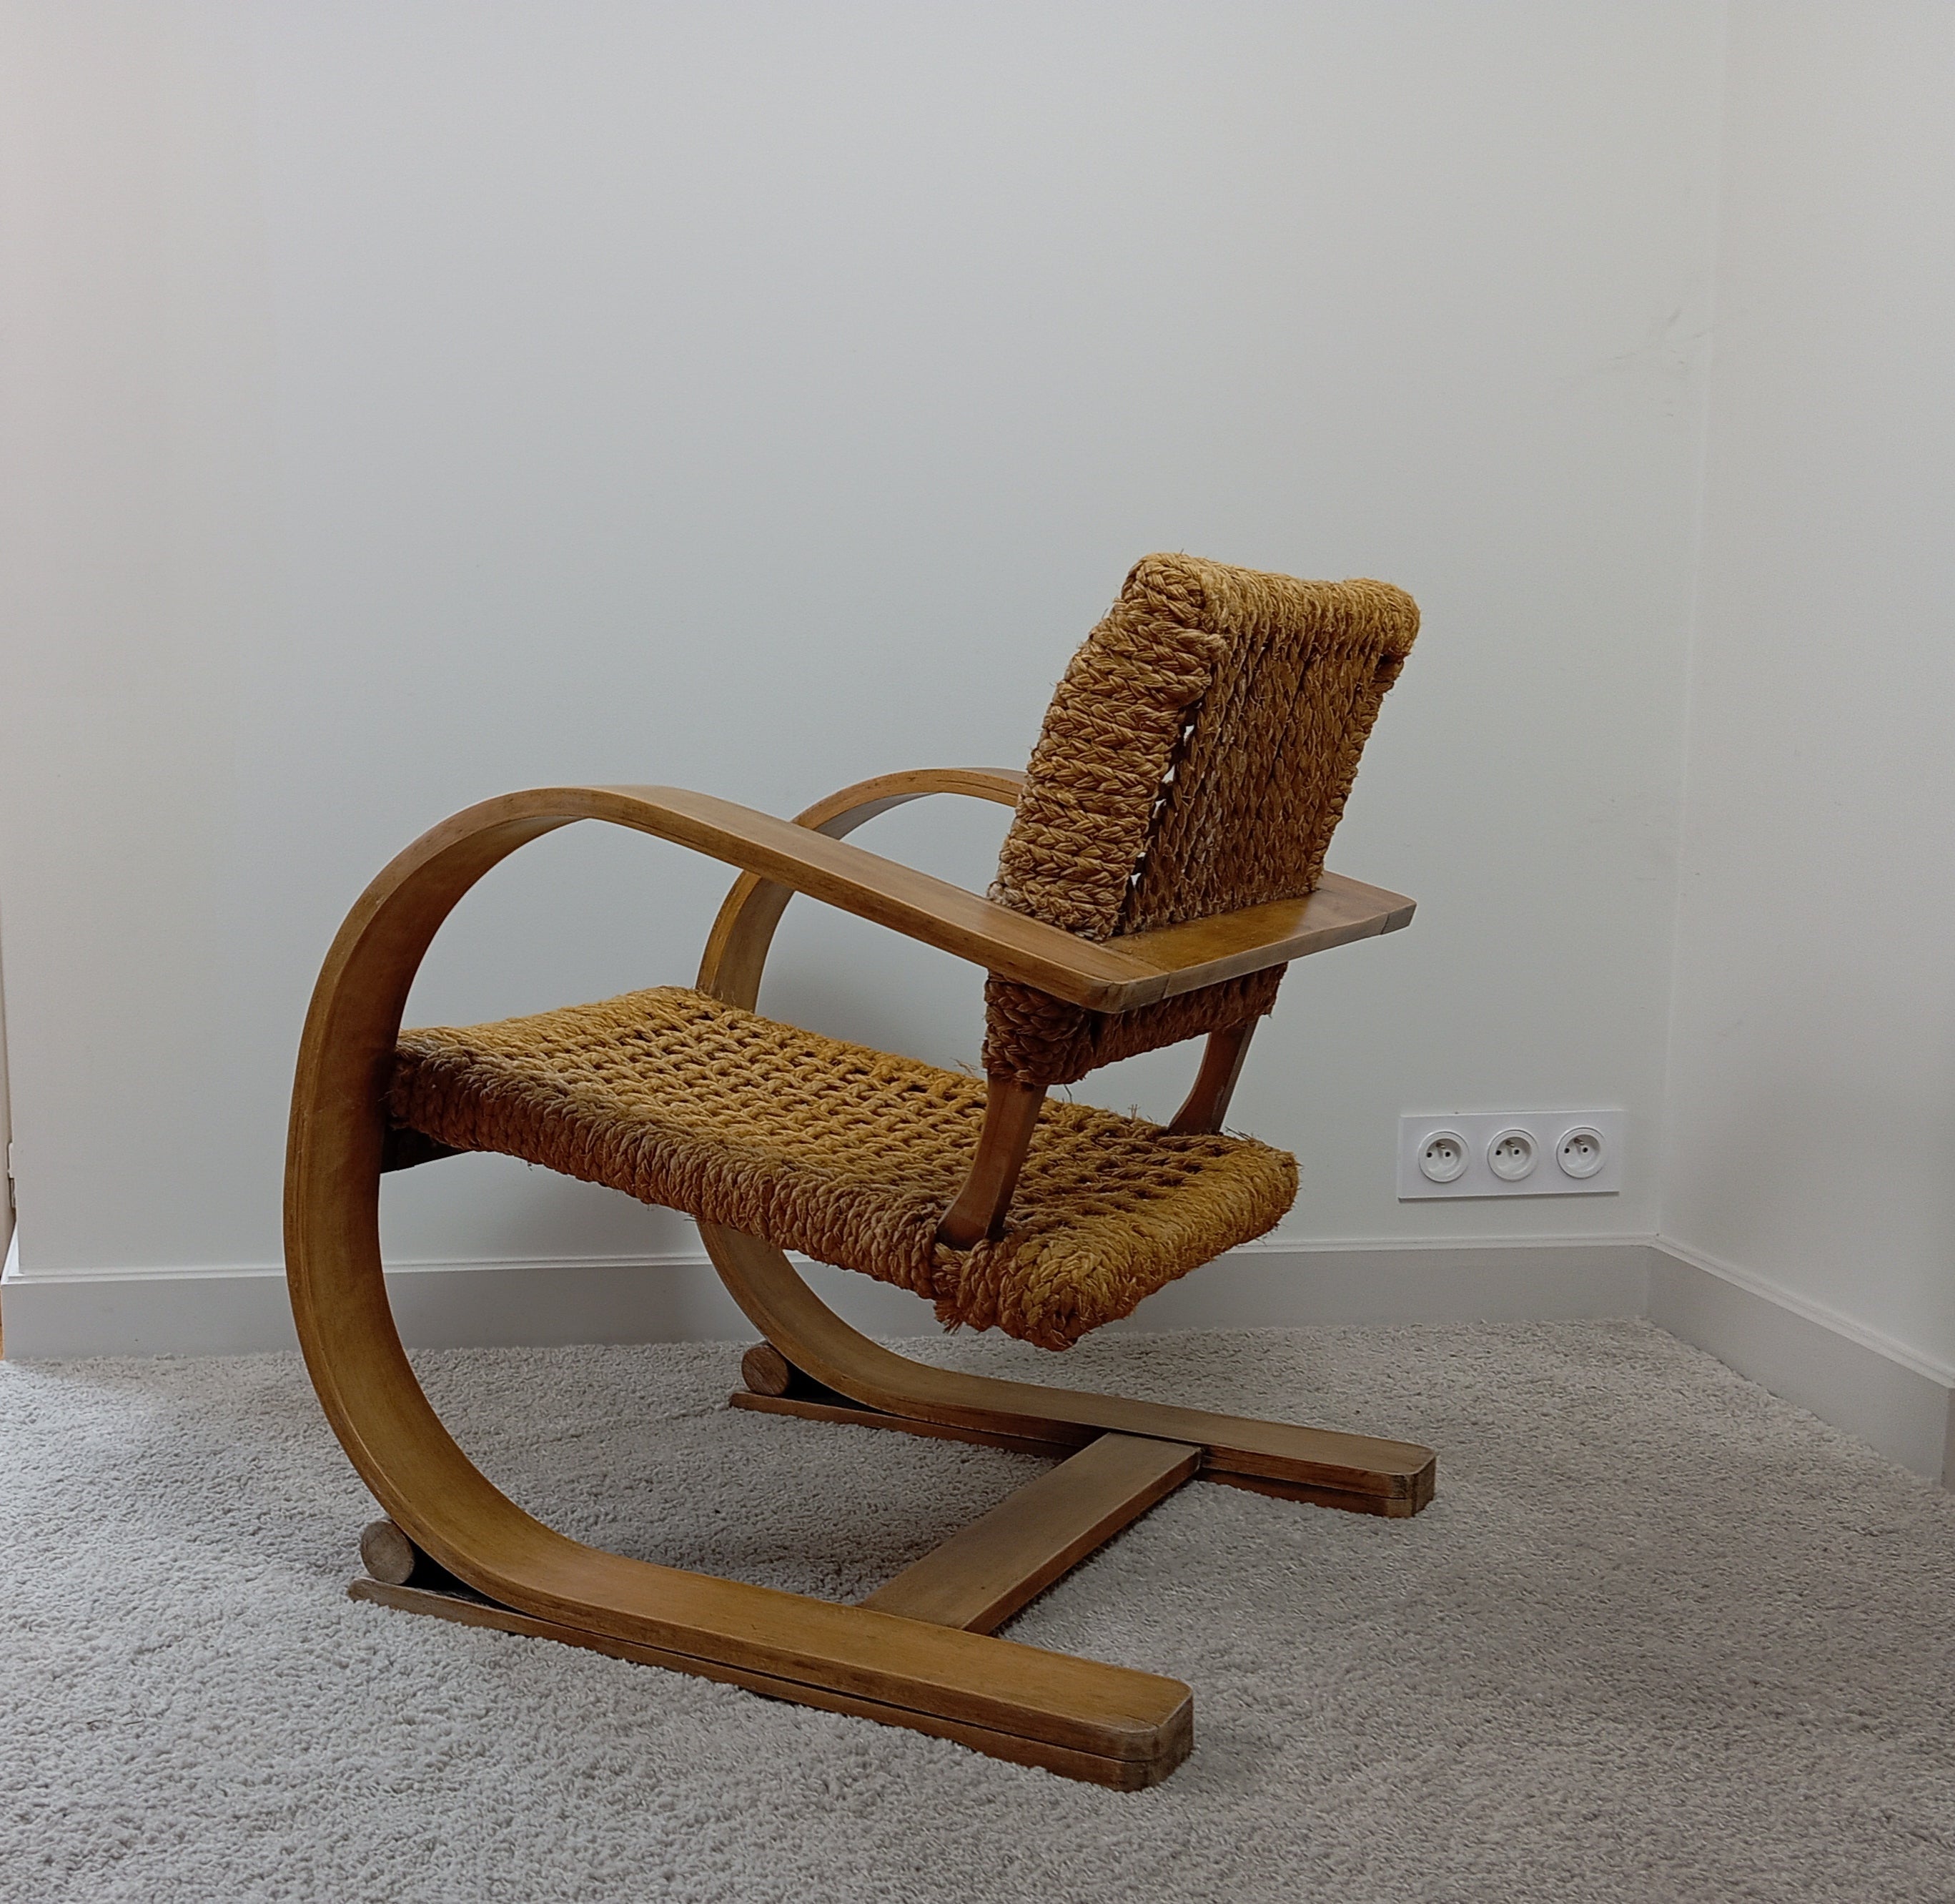 Ce fauteuil a été dessiné par les designers Adrien Audoux et Frida Minet dans les années 50, puis édité par Vibo Vesoul. Il est doté d'une structure incurvée en hêtre stratifié et d'une assise et d'un dossier en corde de chanvre tressée. 

Ce modèle